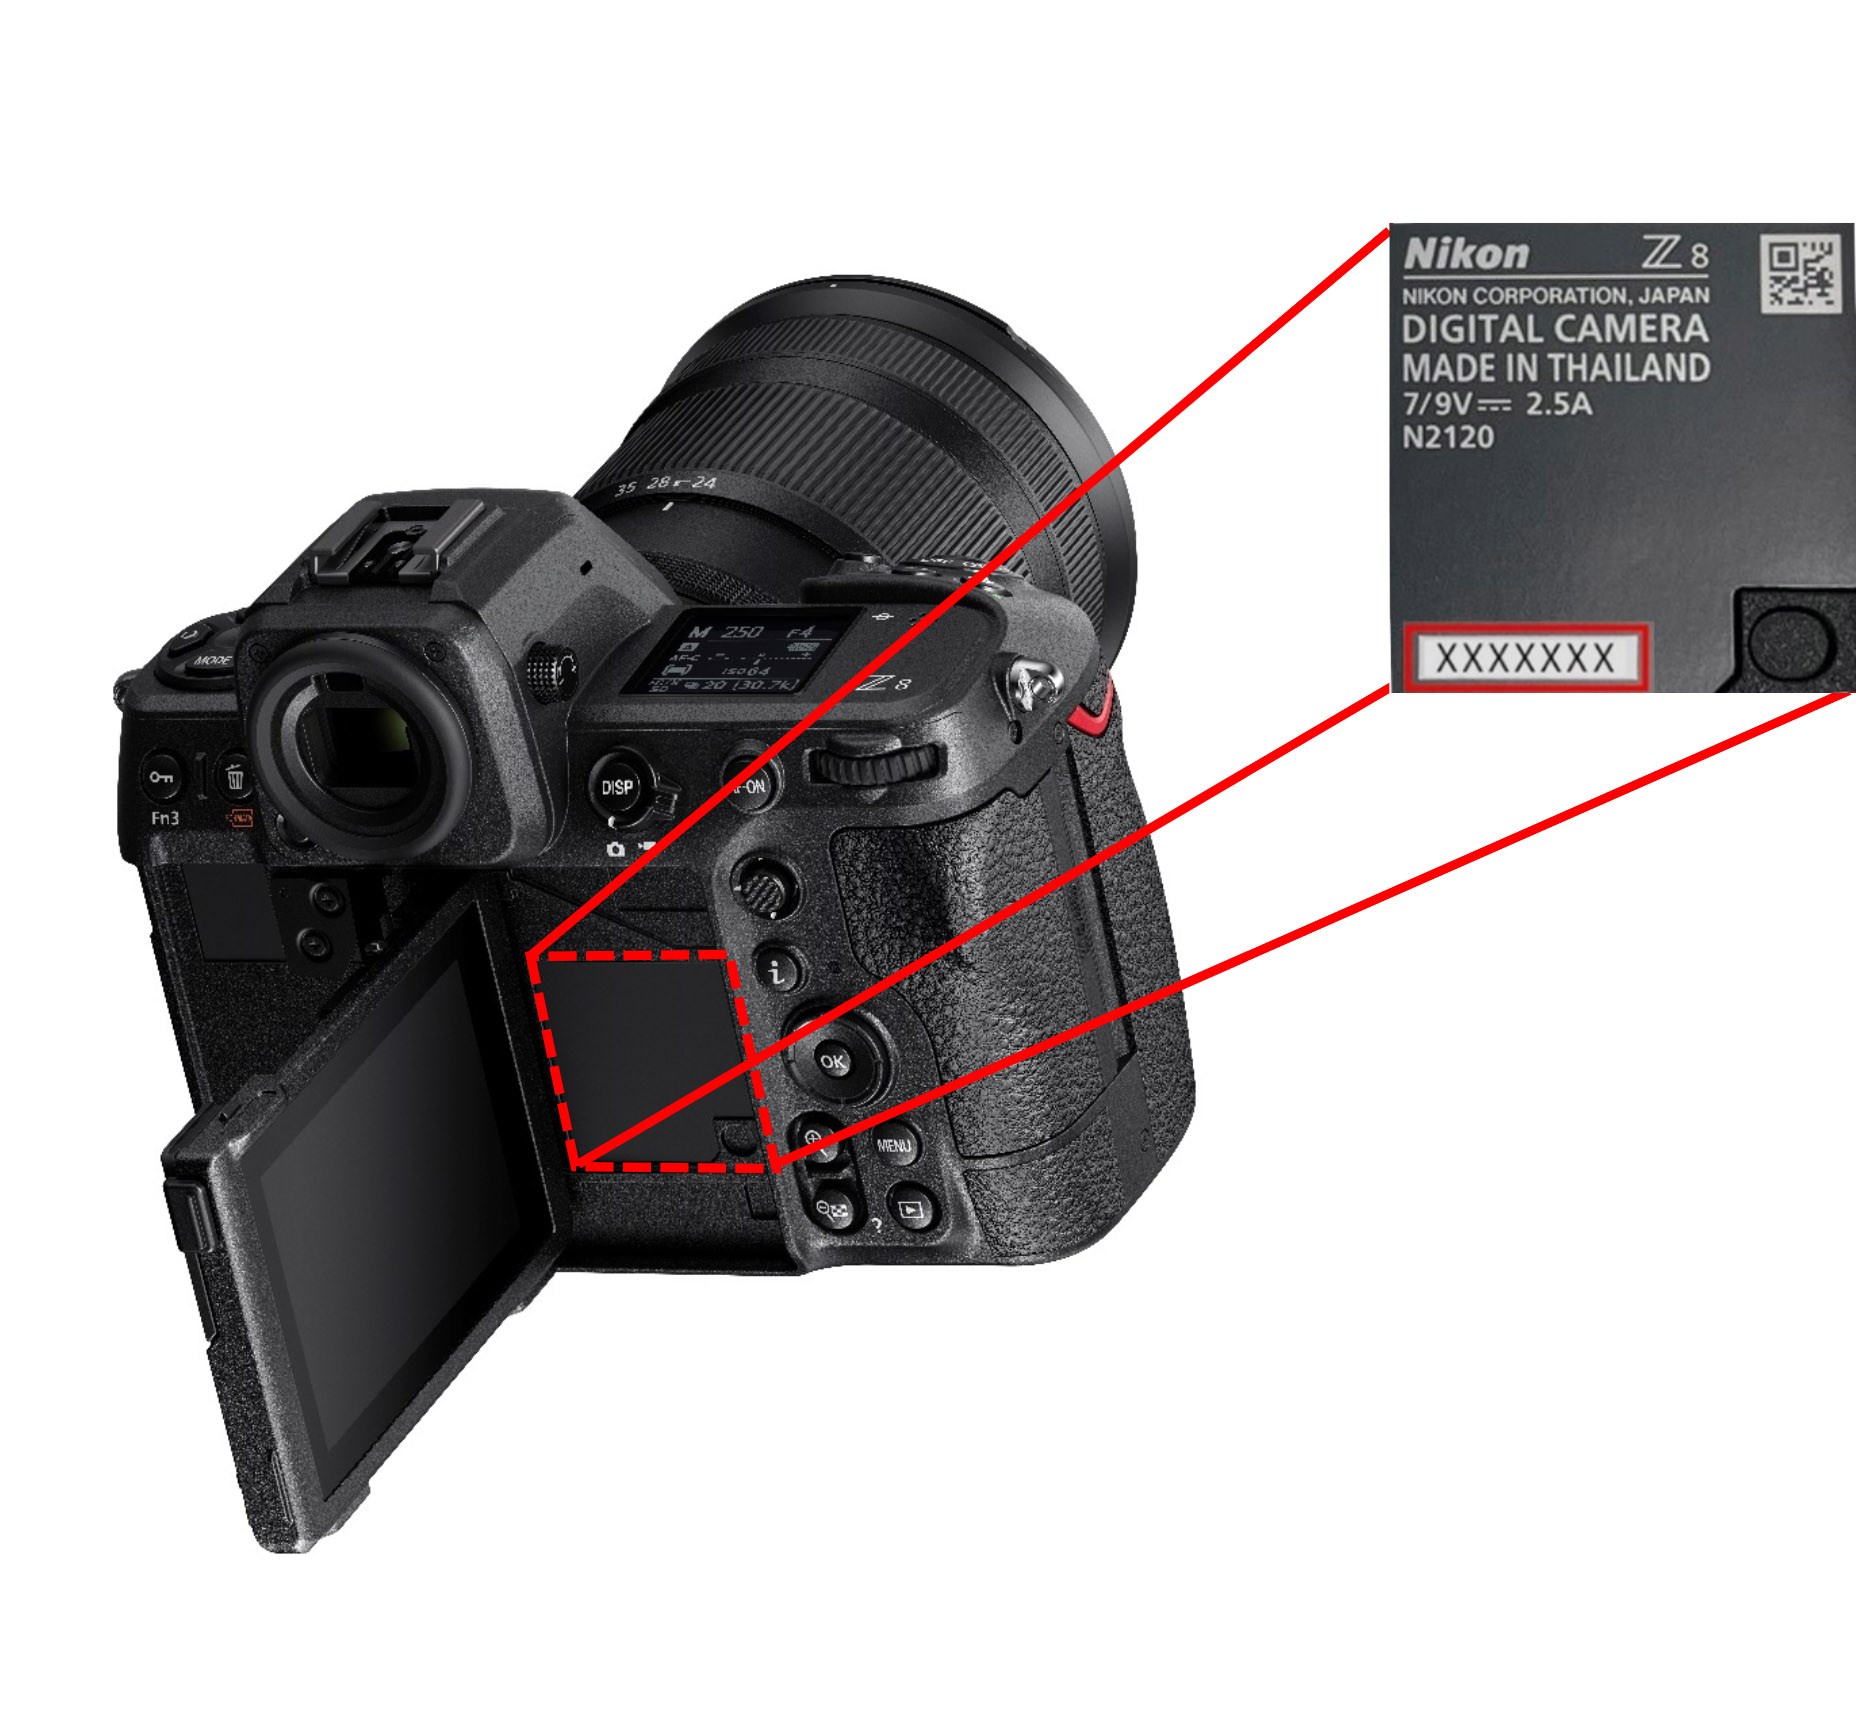 Nikon Z8'ler geri çağırılıyor: Lens yuvasında üretim hatası çıktı